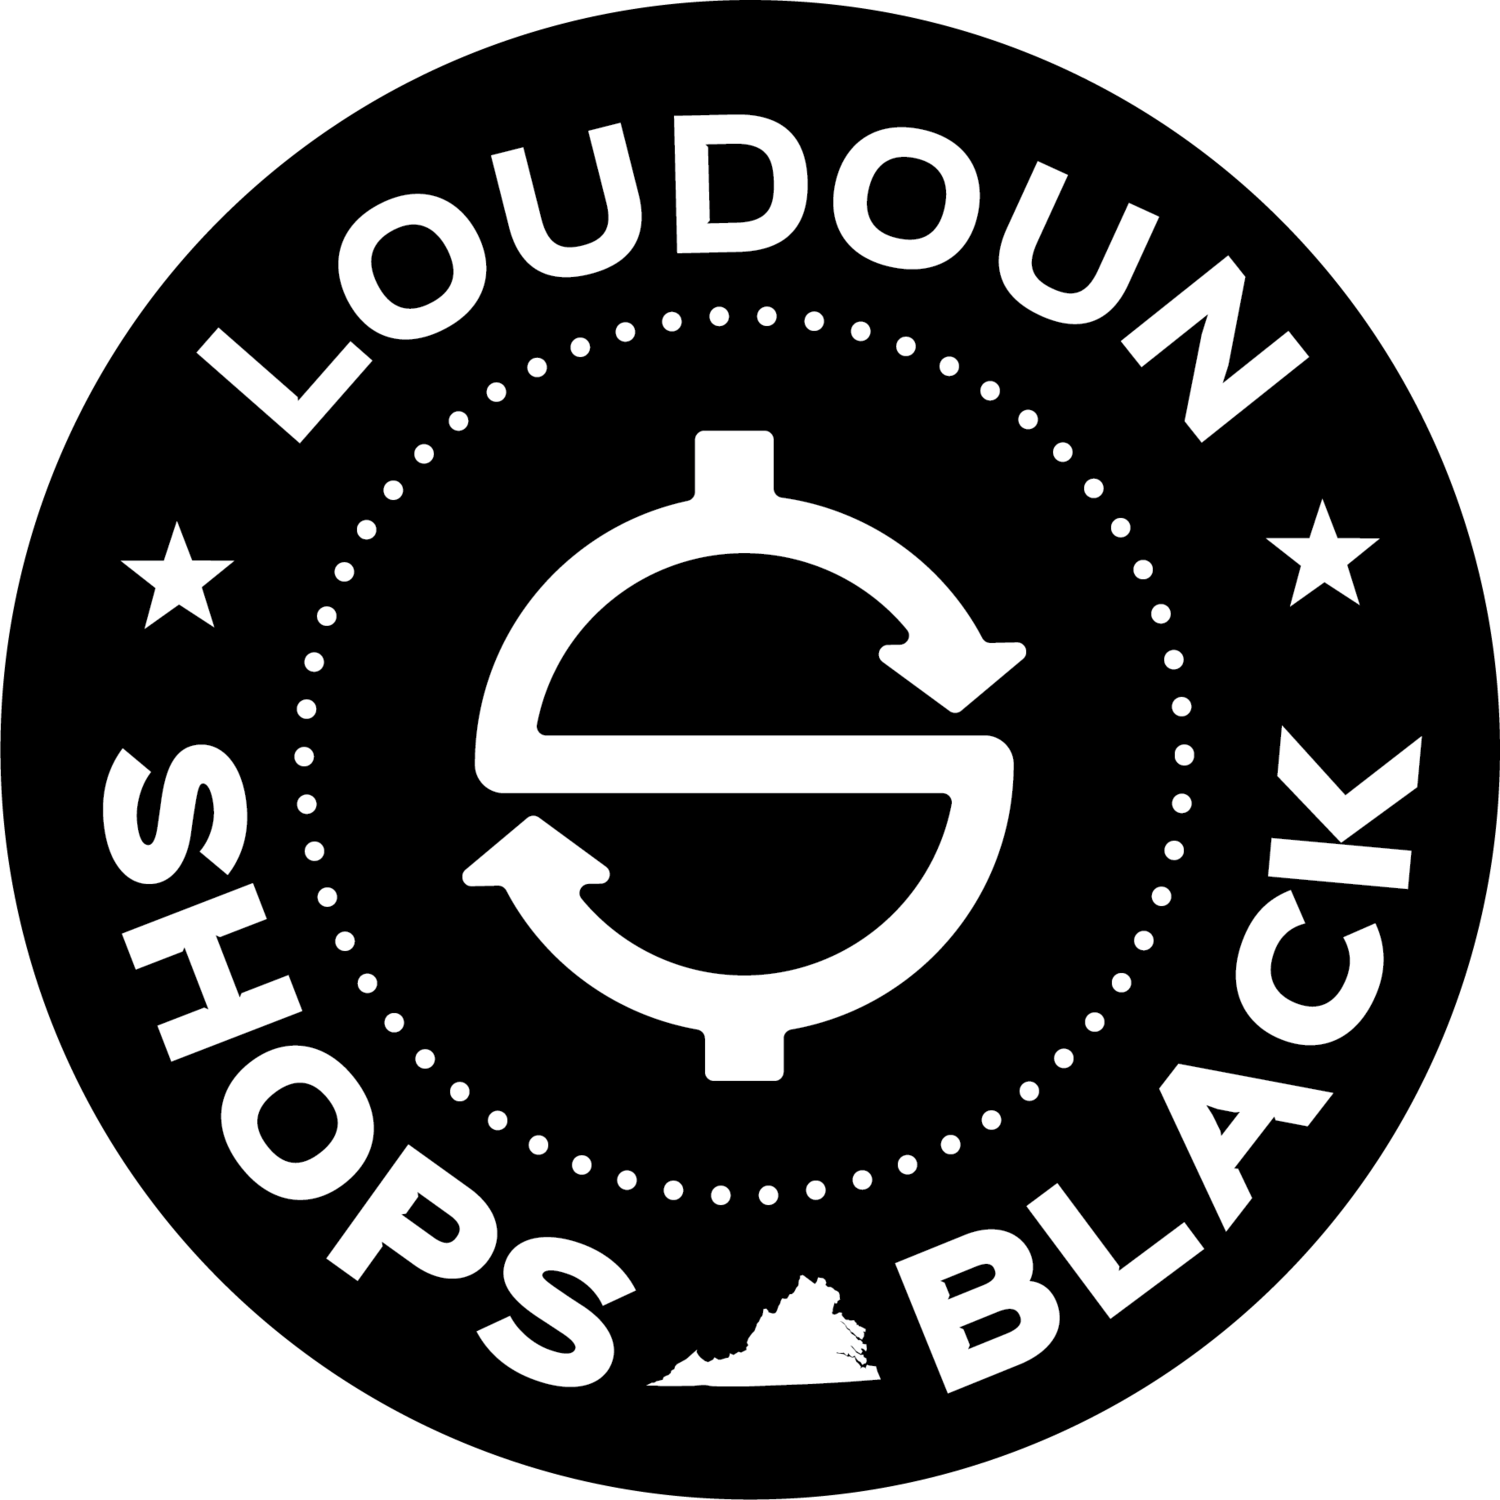 LOUDOUN SHOPS BLACK